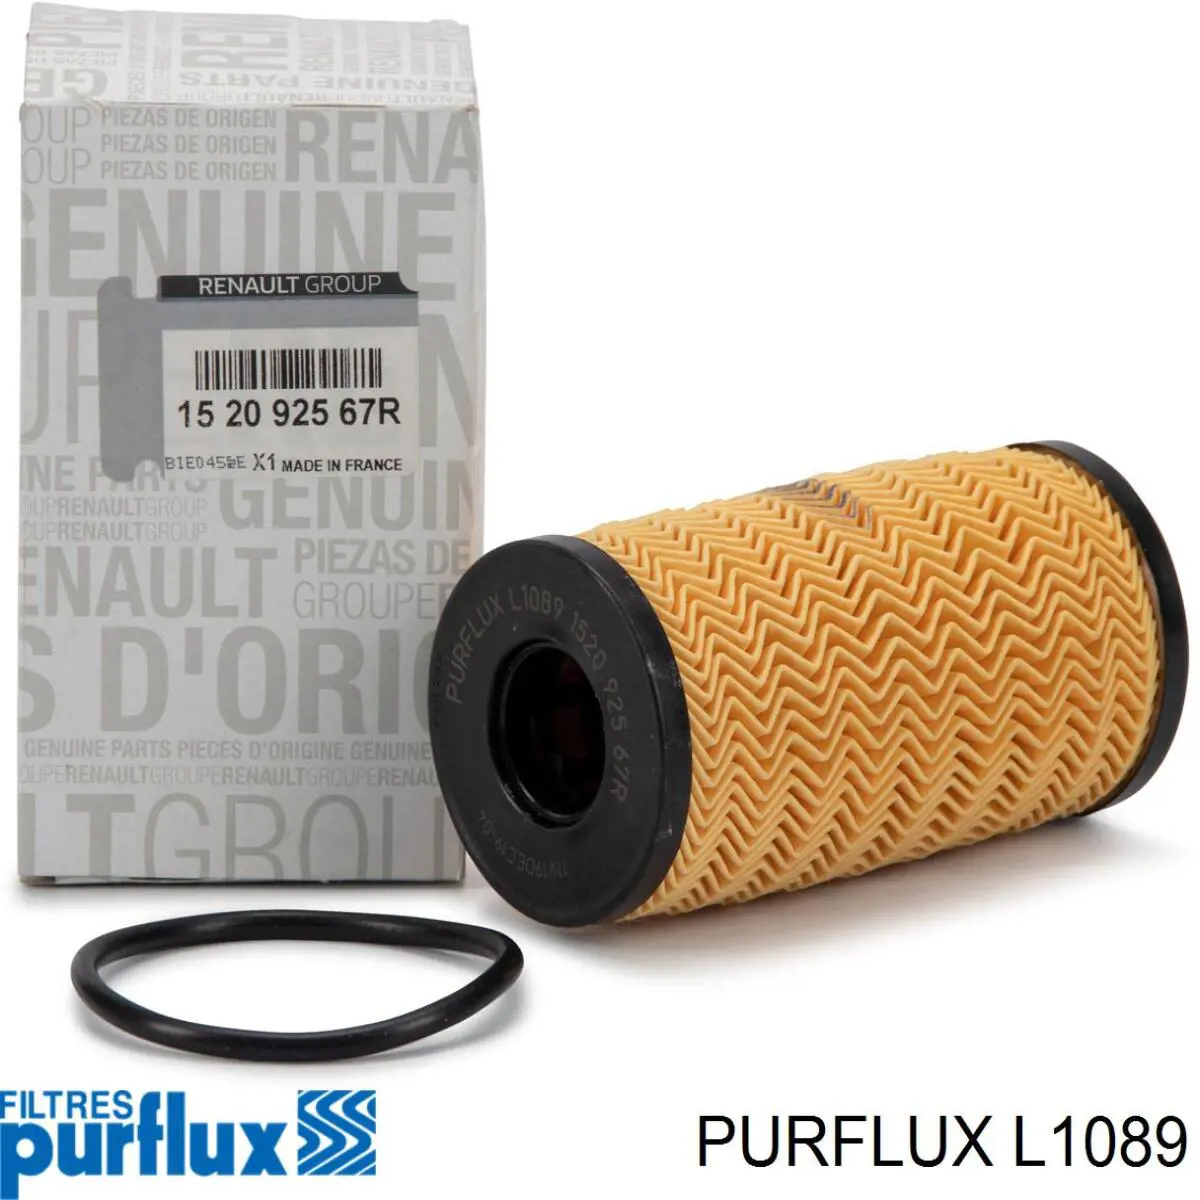 Filtro de aceite L1089 Purflux